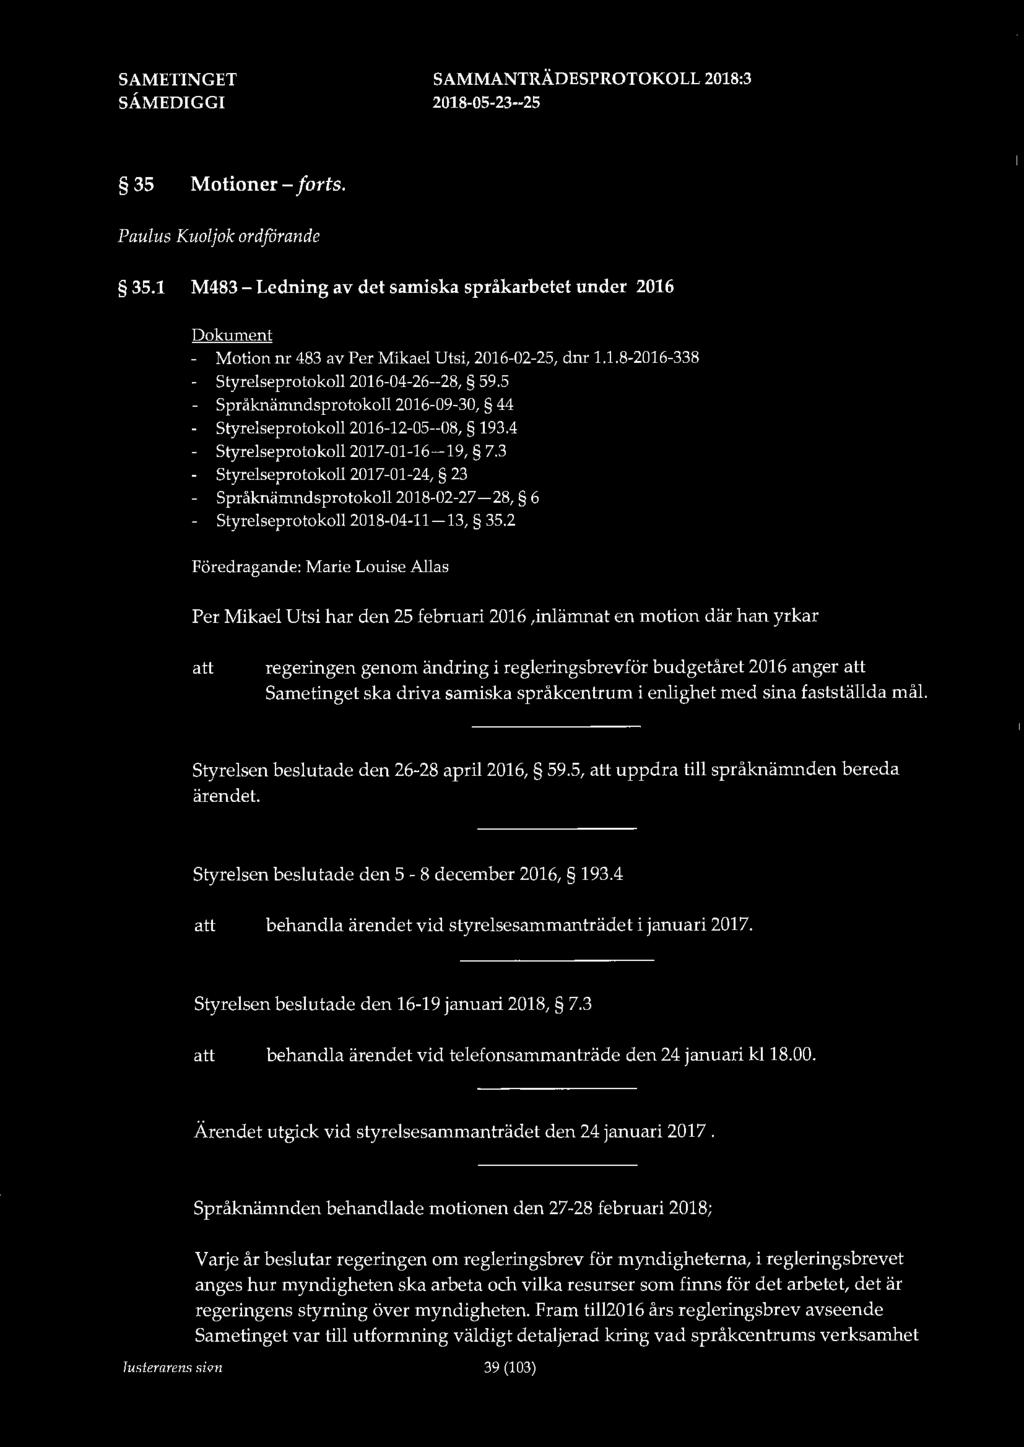 35 Motioner - forts. Paulus Kuoljok ordförande 35.1 M483 - Ledning av det samiska språkarbetet under 2016 Dokument - Motion nr 483 av Per Mikael Utsi, 2016-02-25, dnr 1.1.8-2016-338 - Styrelseprotokoll 2016-04-26--28, 59.